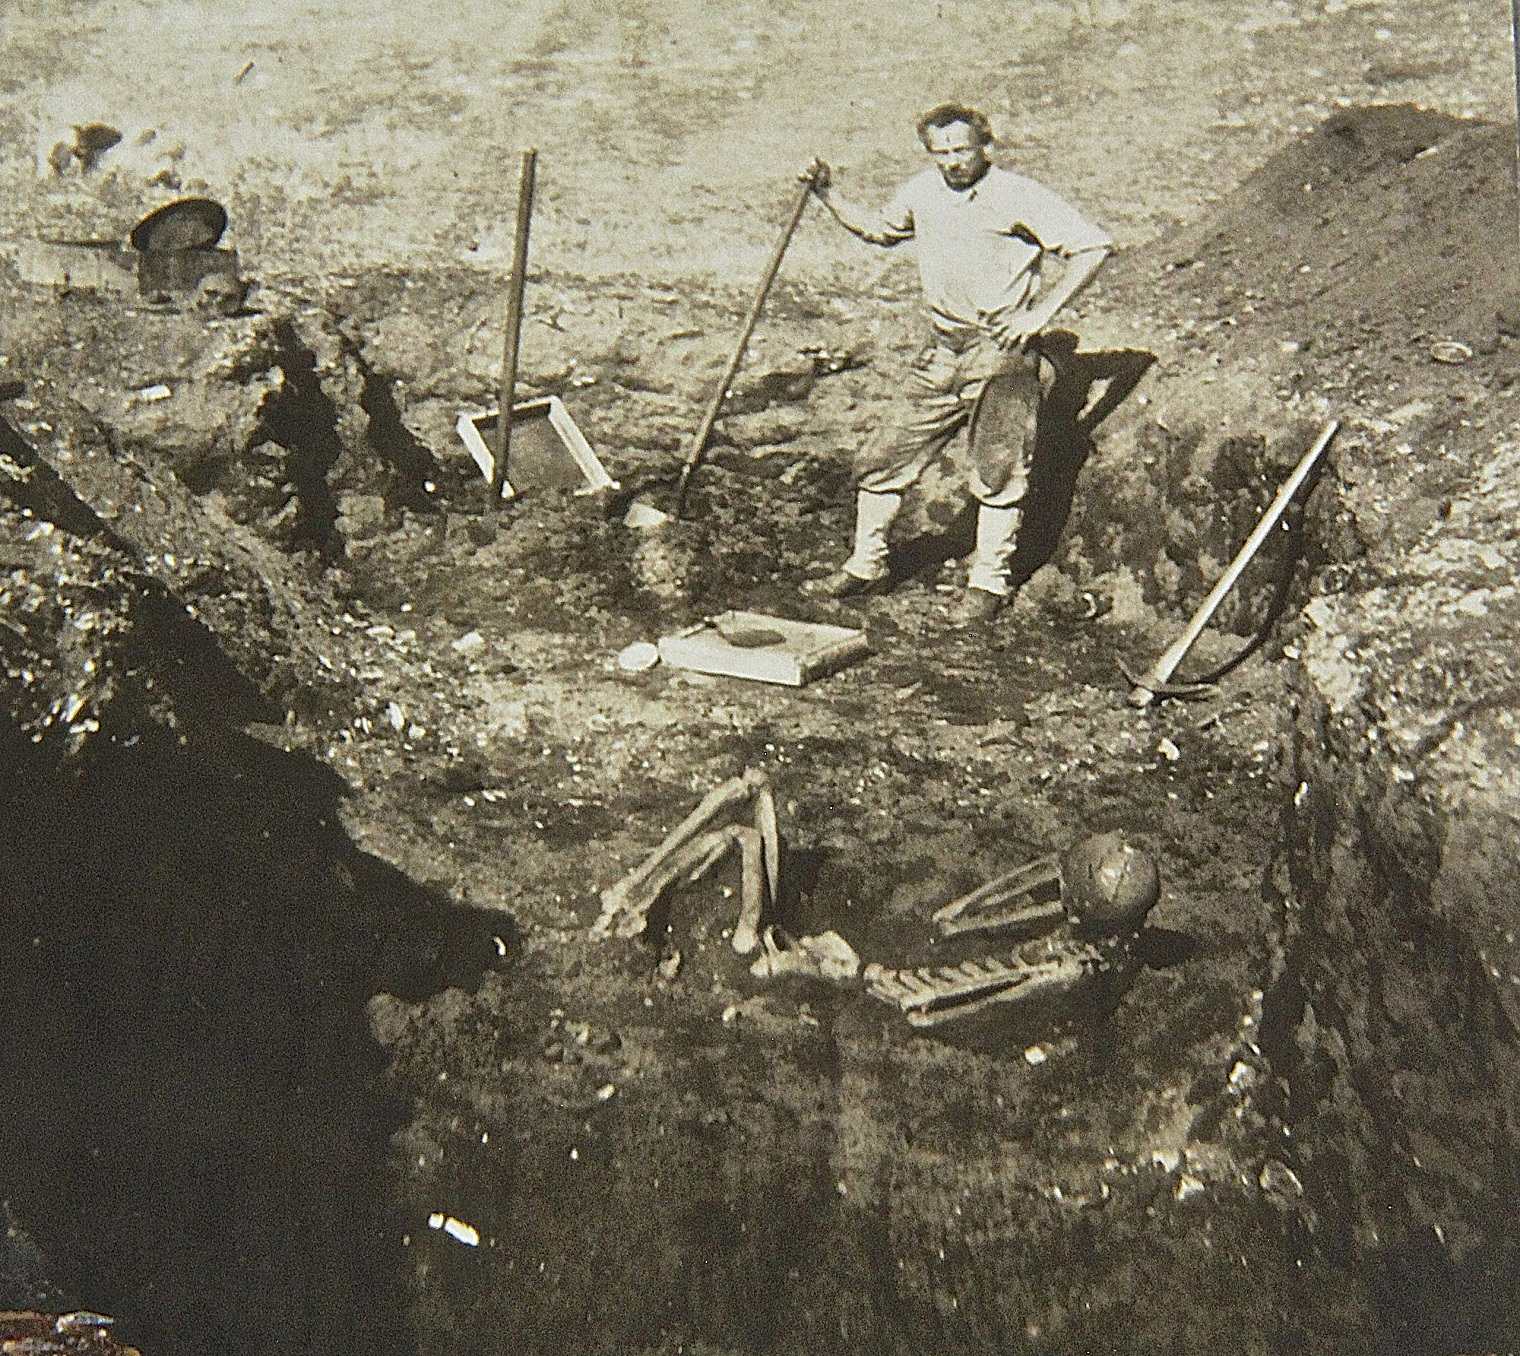 卡塔利娜岛发现金发巨人骨骼遗骸 1